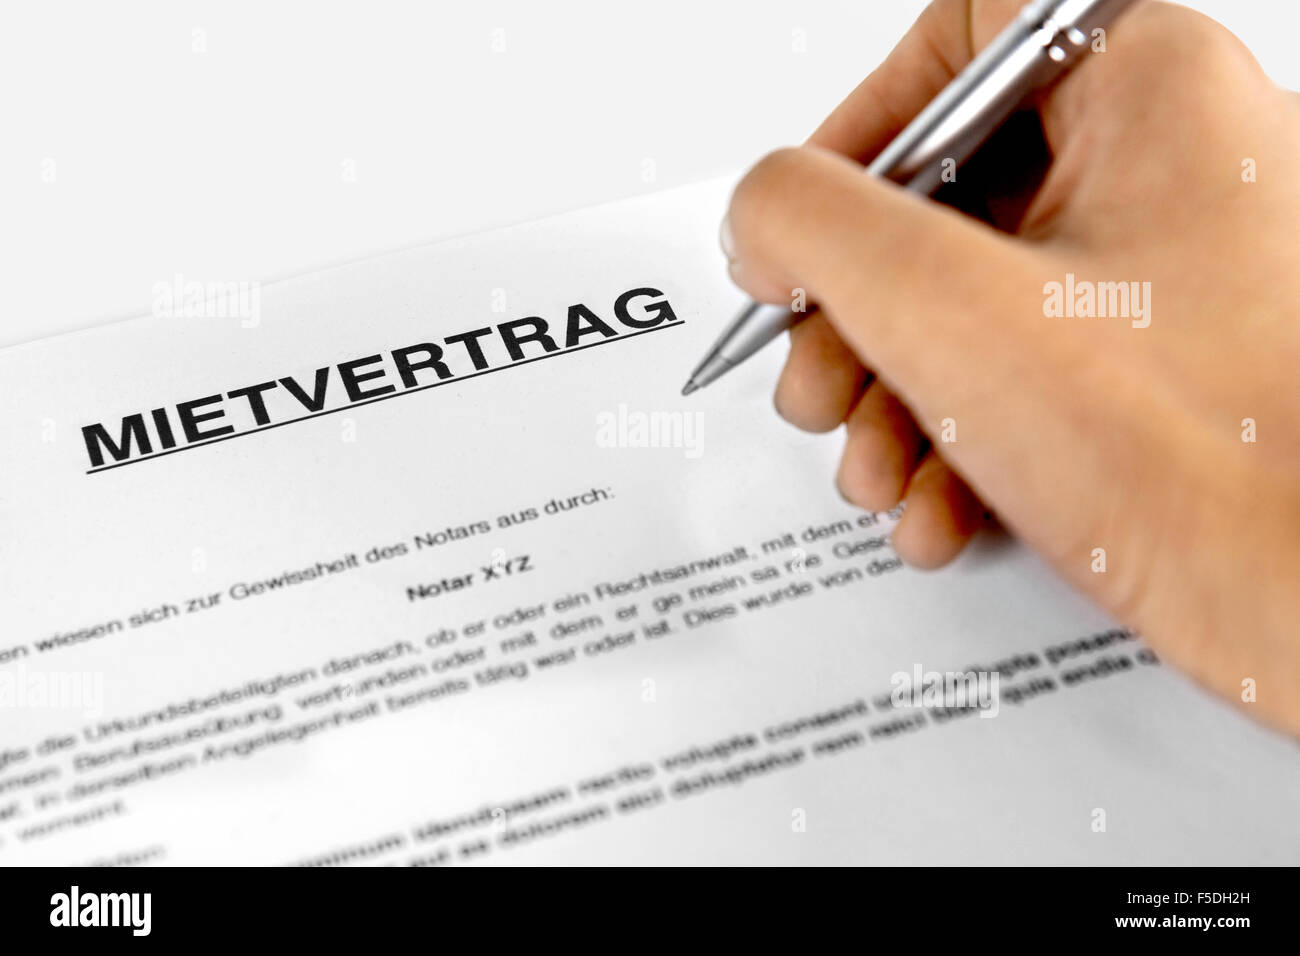 Formulaire de contrat de location avec la signature - mot allemand "ietvertrag» Banque D'Images